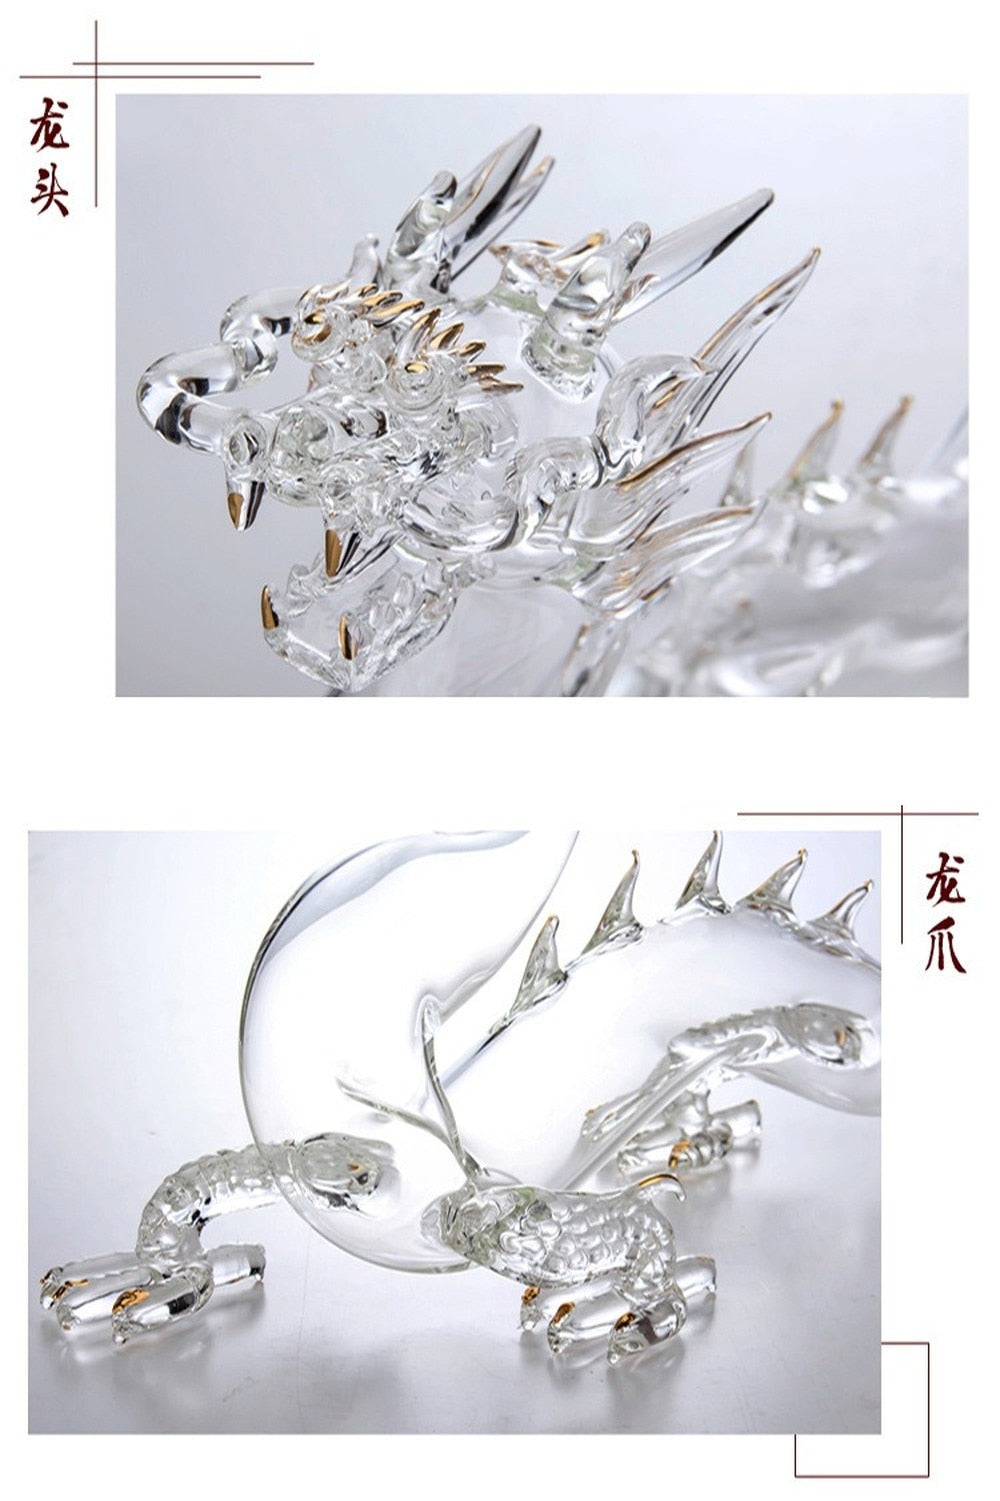 MALWear Dragon Glass Decanter